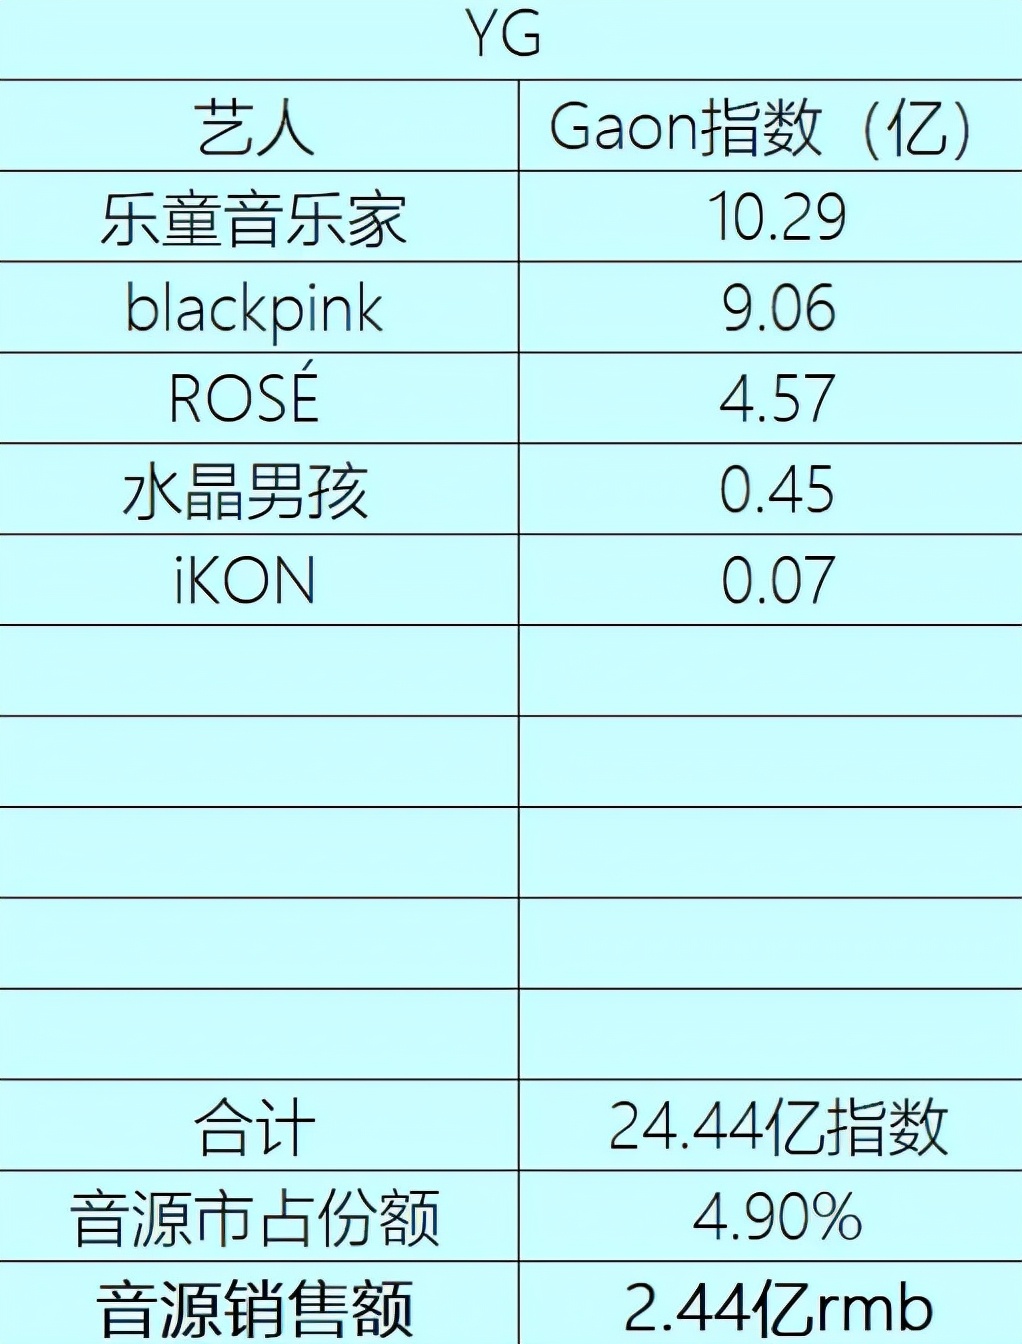 韩国音源销售额排行，IU一人抗天下，JYP和YG总数据不占优势